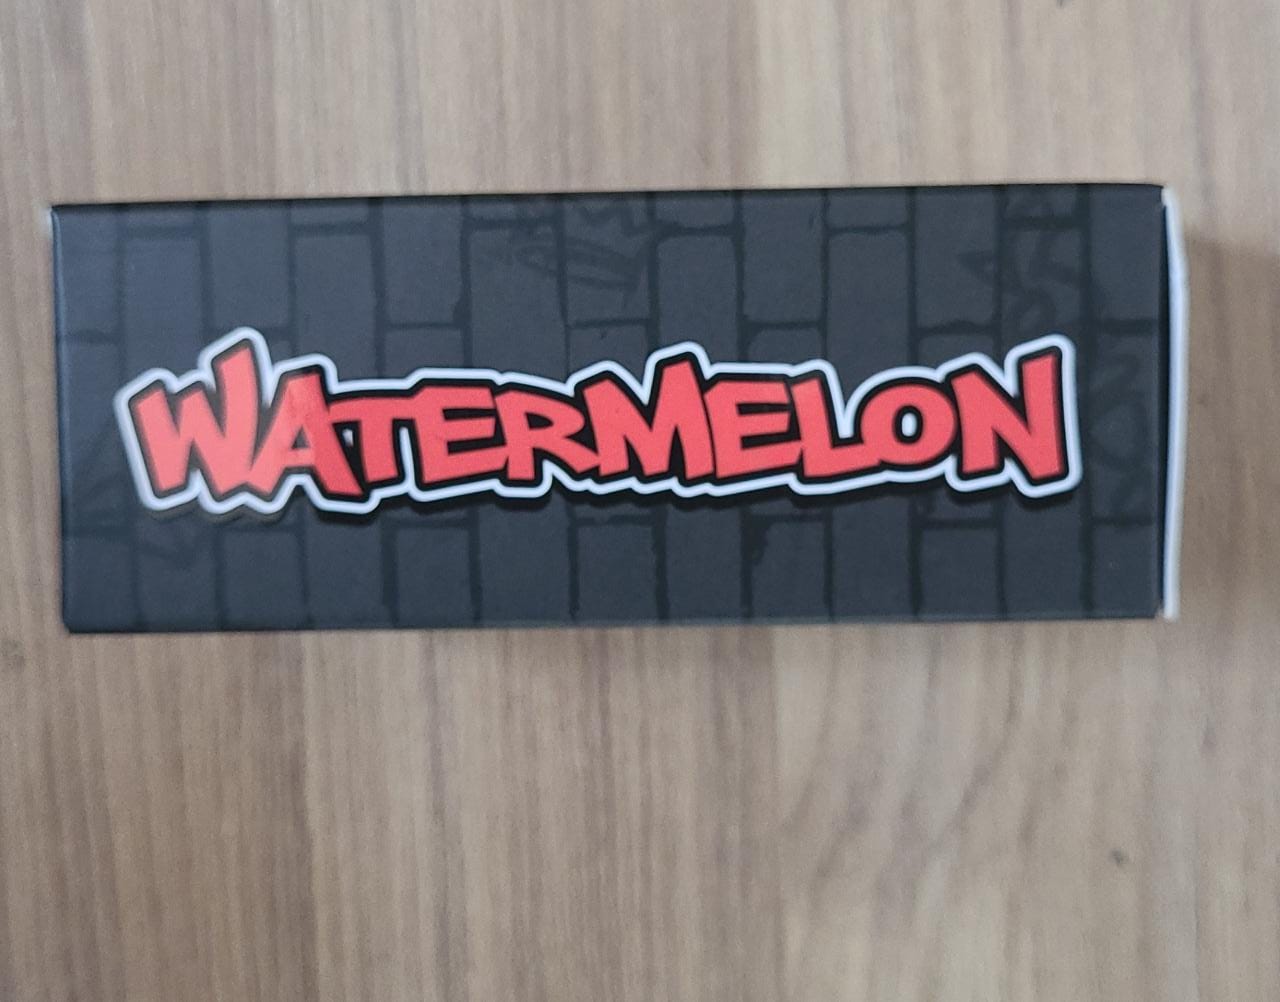 Sampa nicsalt sabor Watermelon; vapevaportabacaria.com